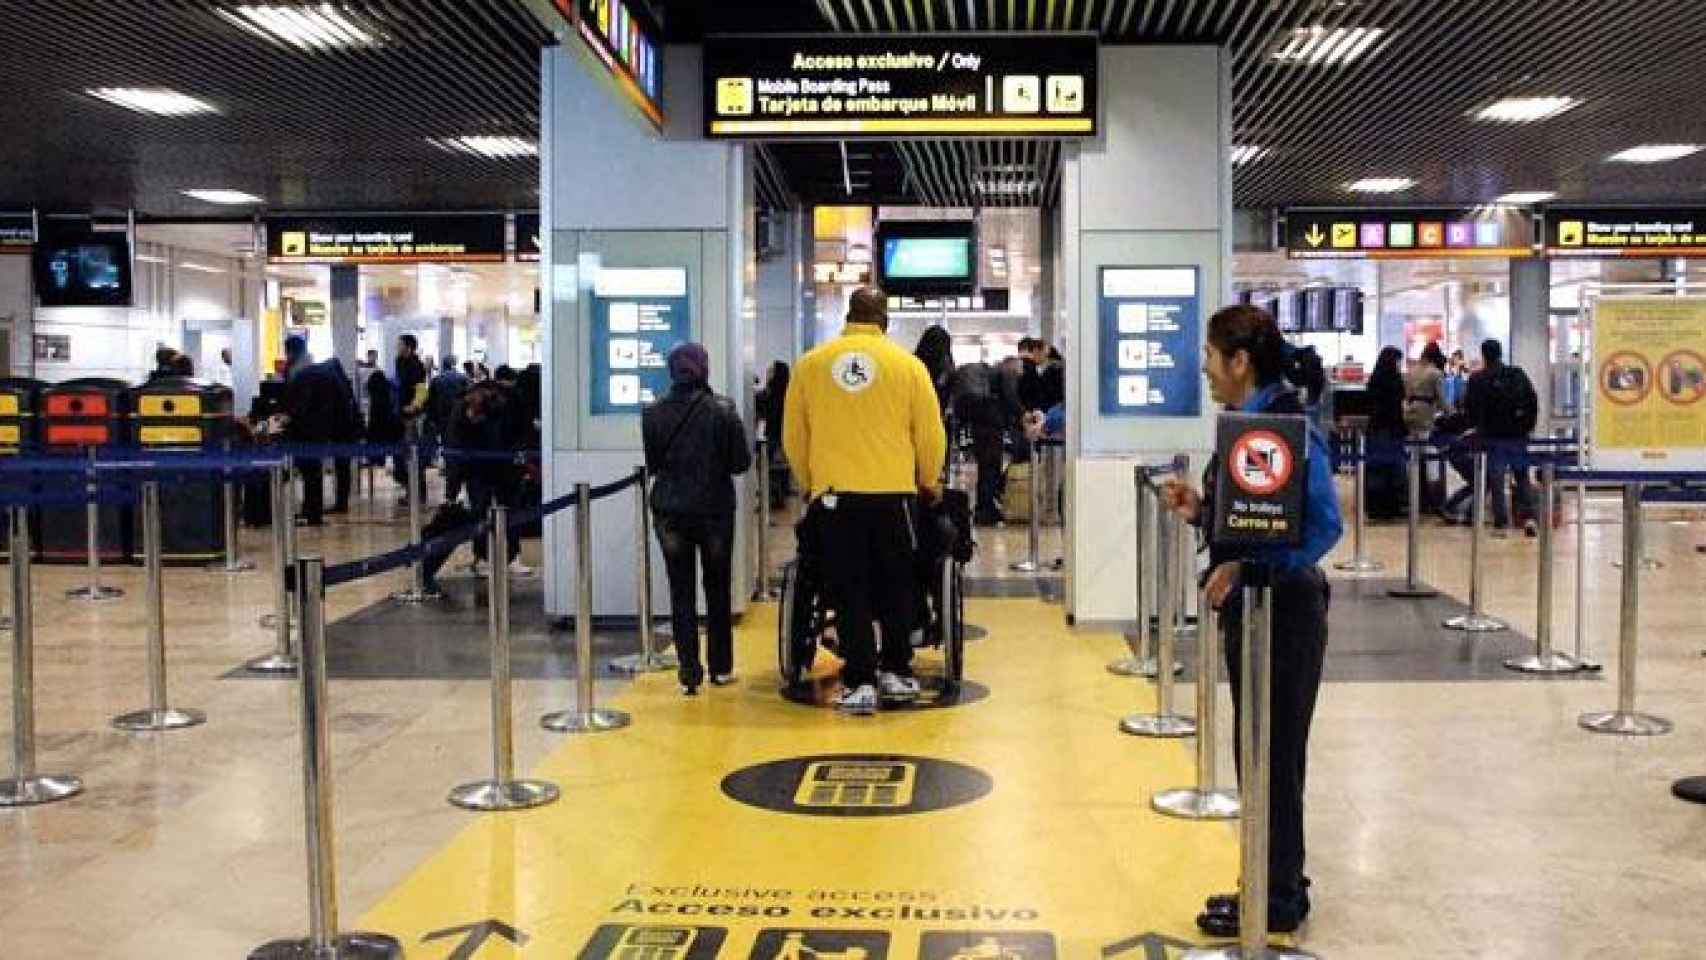 Imagen de uno de los filtros de seguridad del aeropuerto de Madrid Barajas / AENA